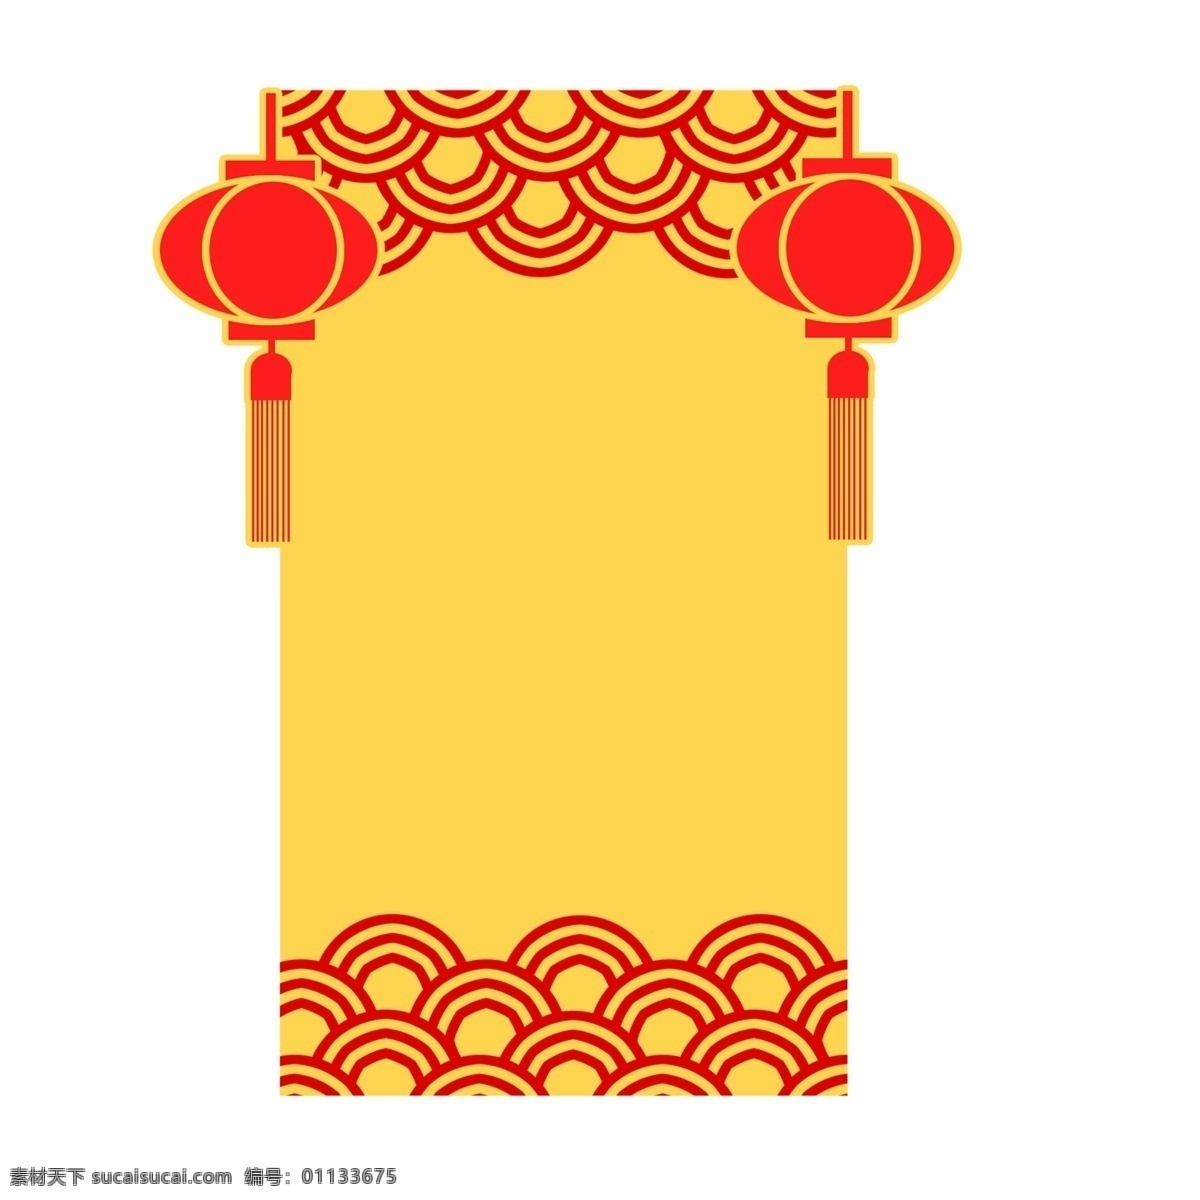 创意 金色 红色 手绘 边框 现代中国风 古风 年画 灯笼 灯笼边框 新年海报 新年边框 海报边框 祥云 祥云插画